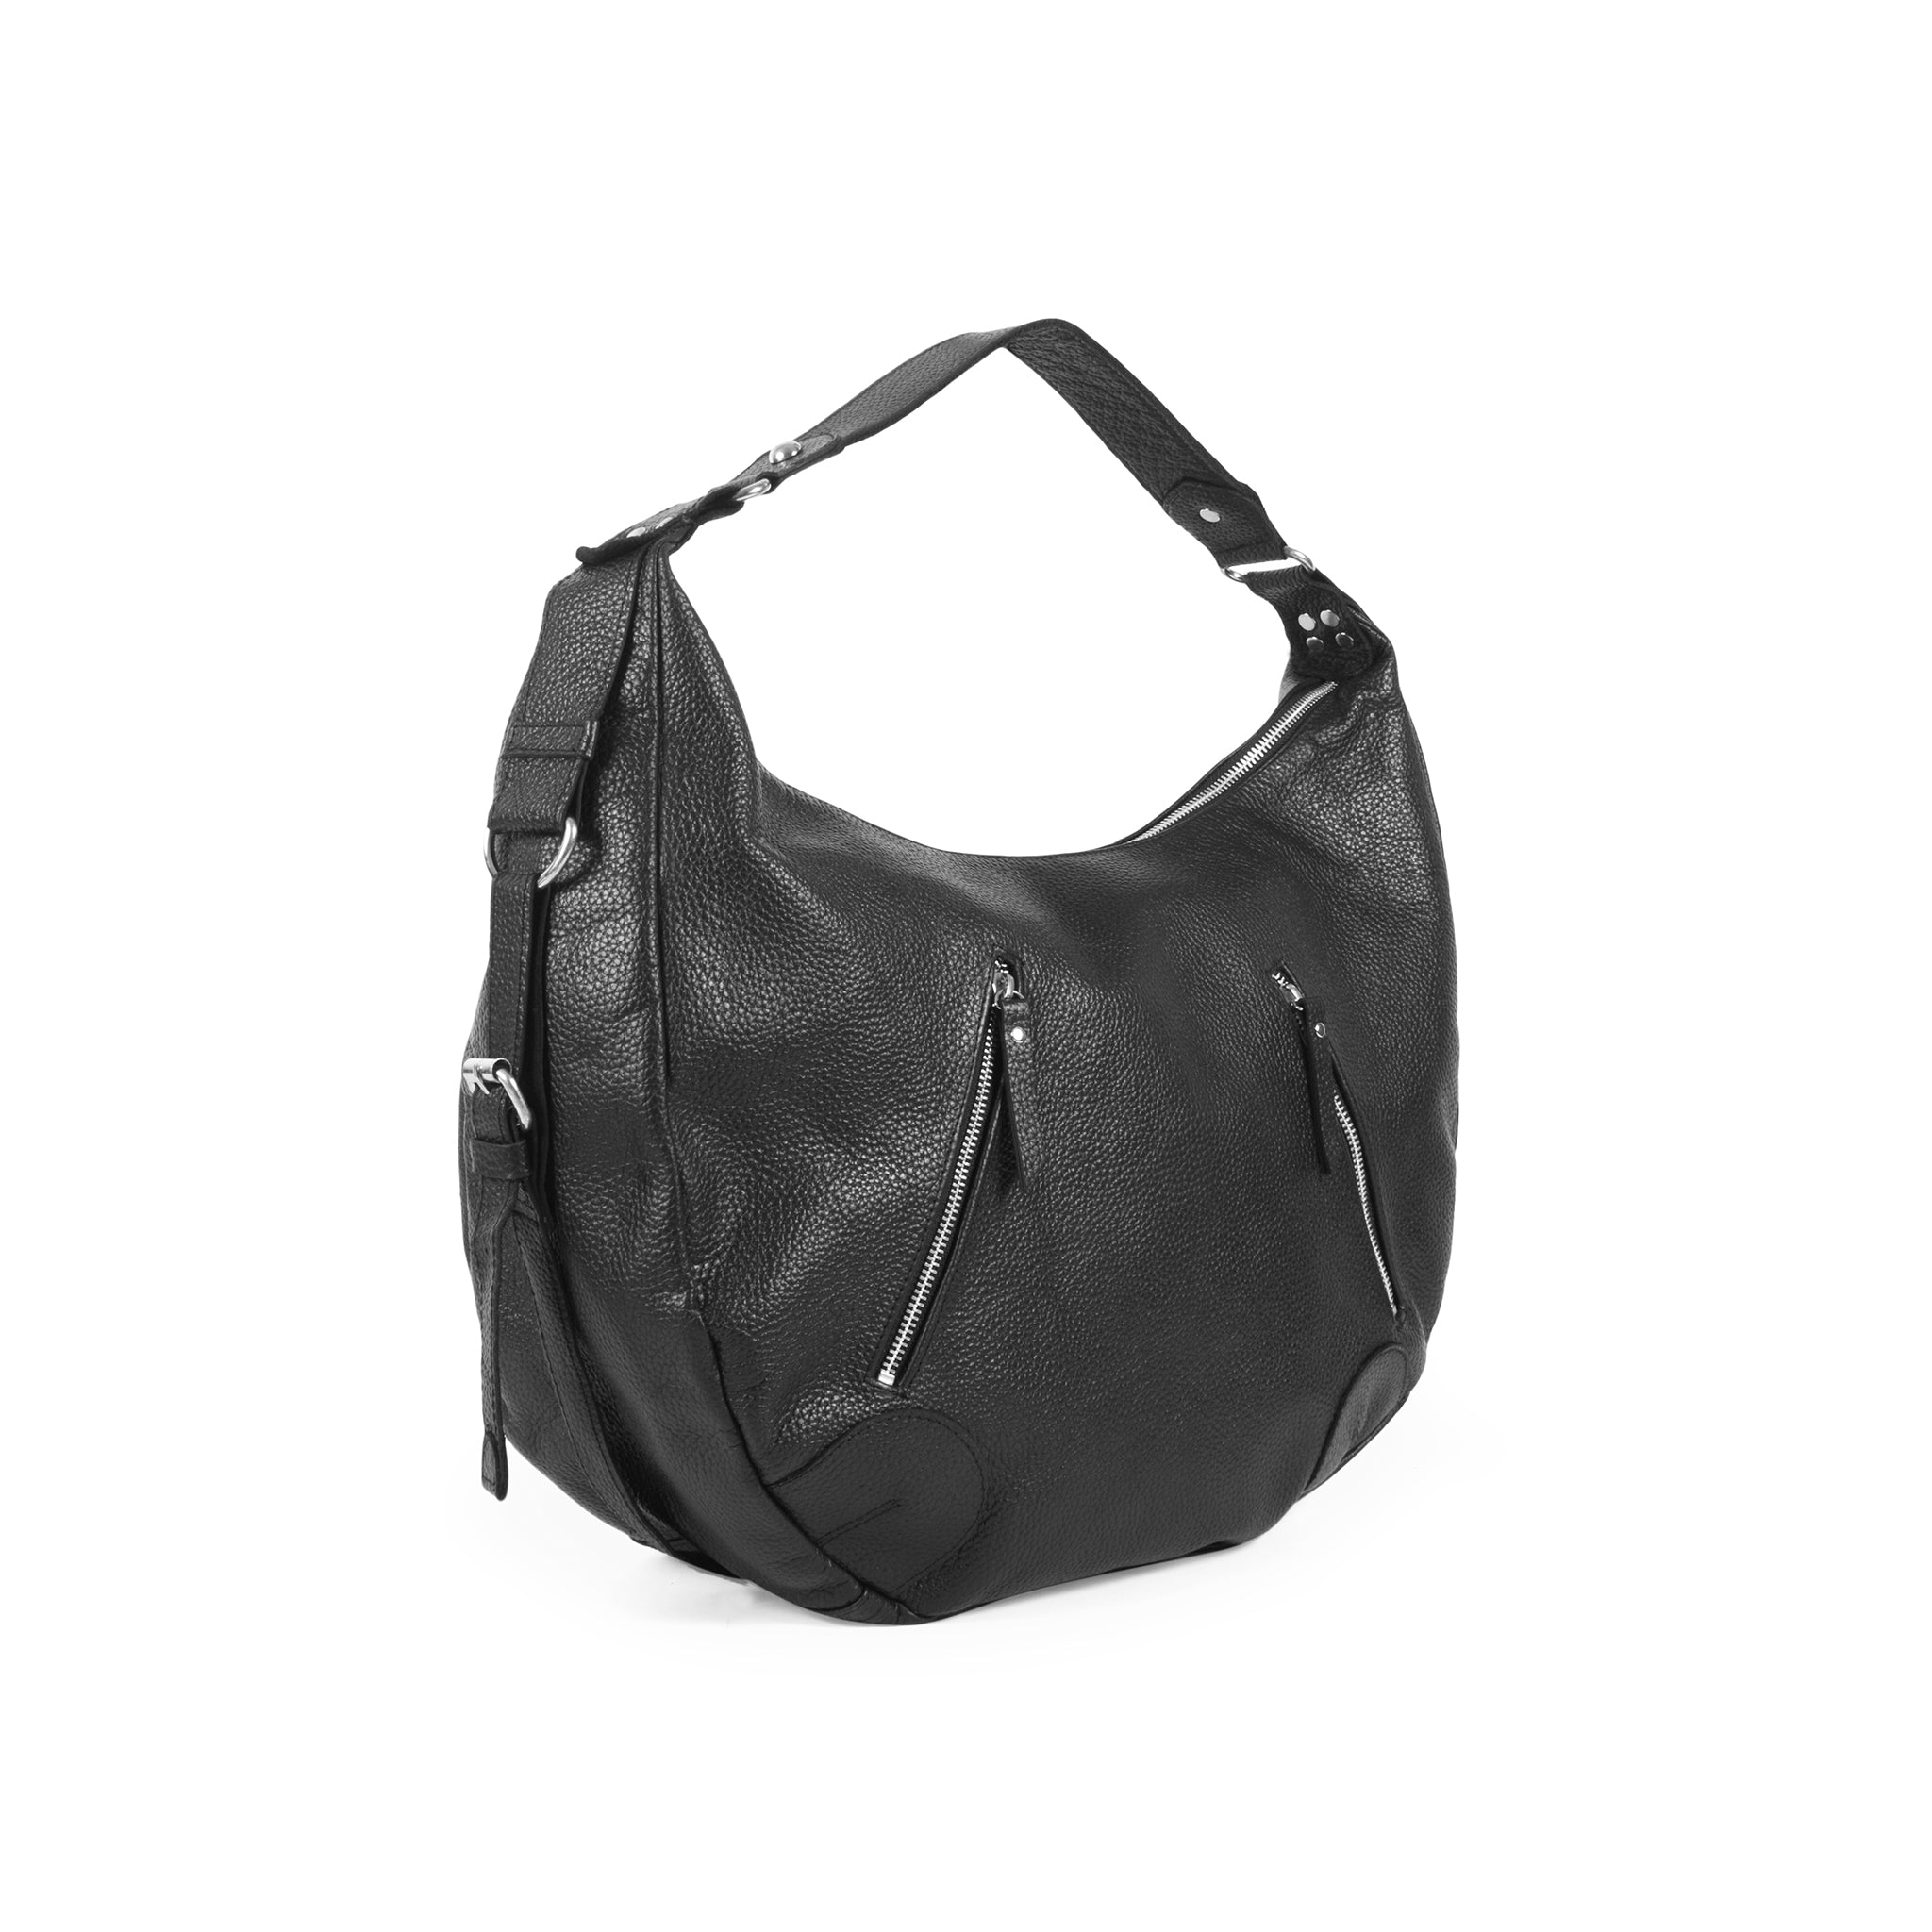 Side view Black Leather Pebbled Texture Hobo Shoulder Bag